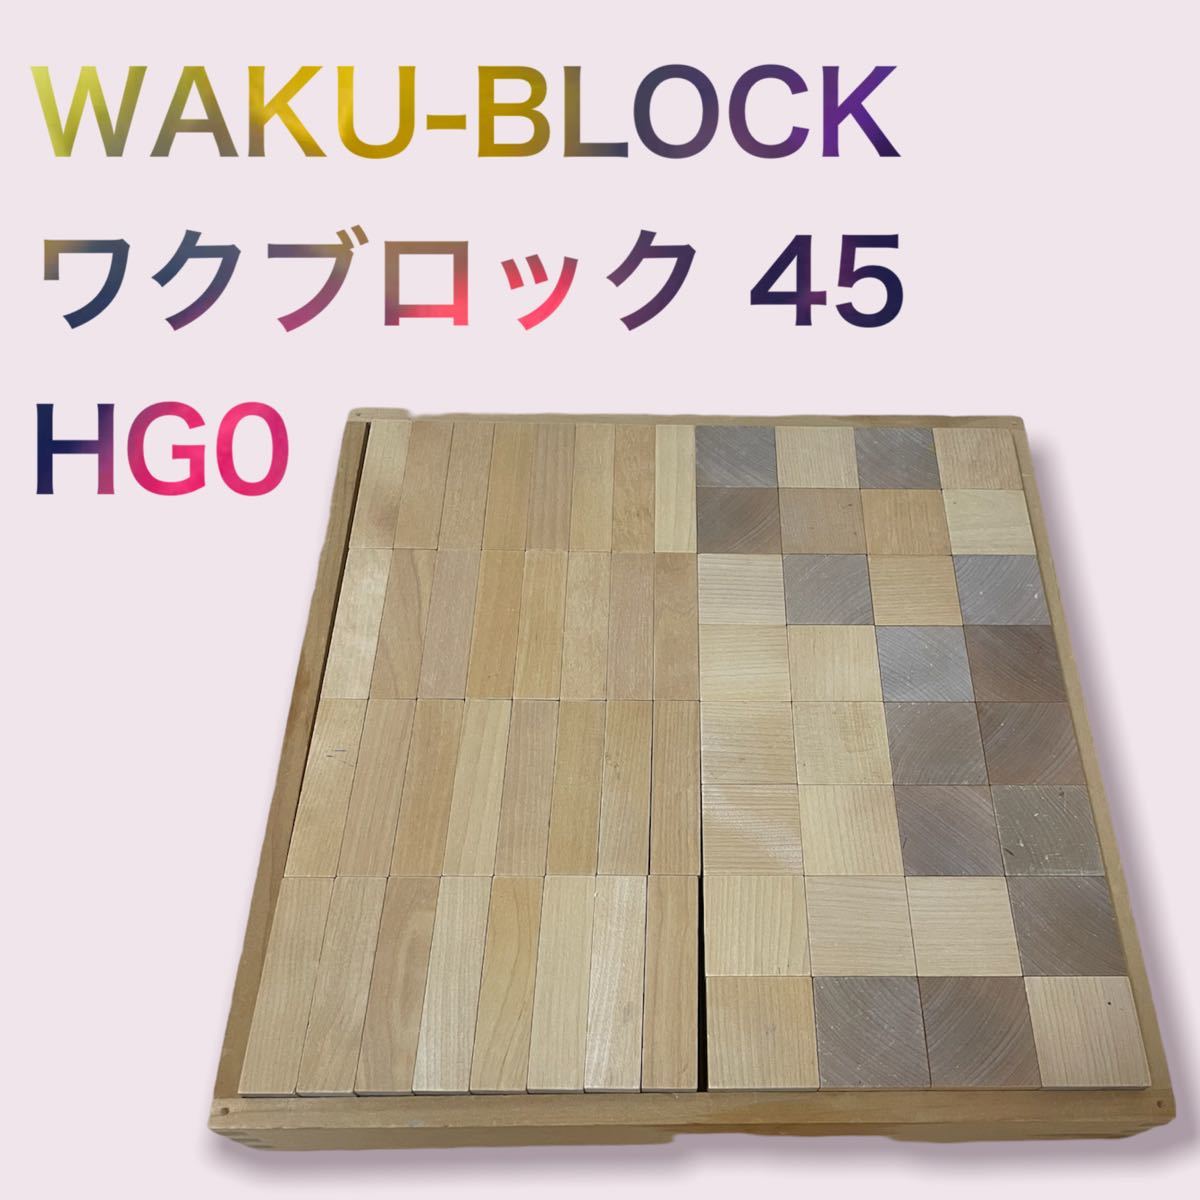 ☆ワクブロック WAKU-BLOCK 45 H0 ☆ 童具館 和久洋三 積み木-